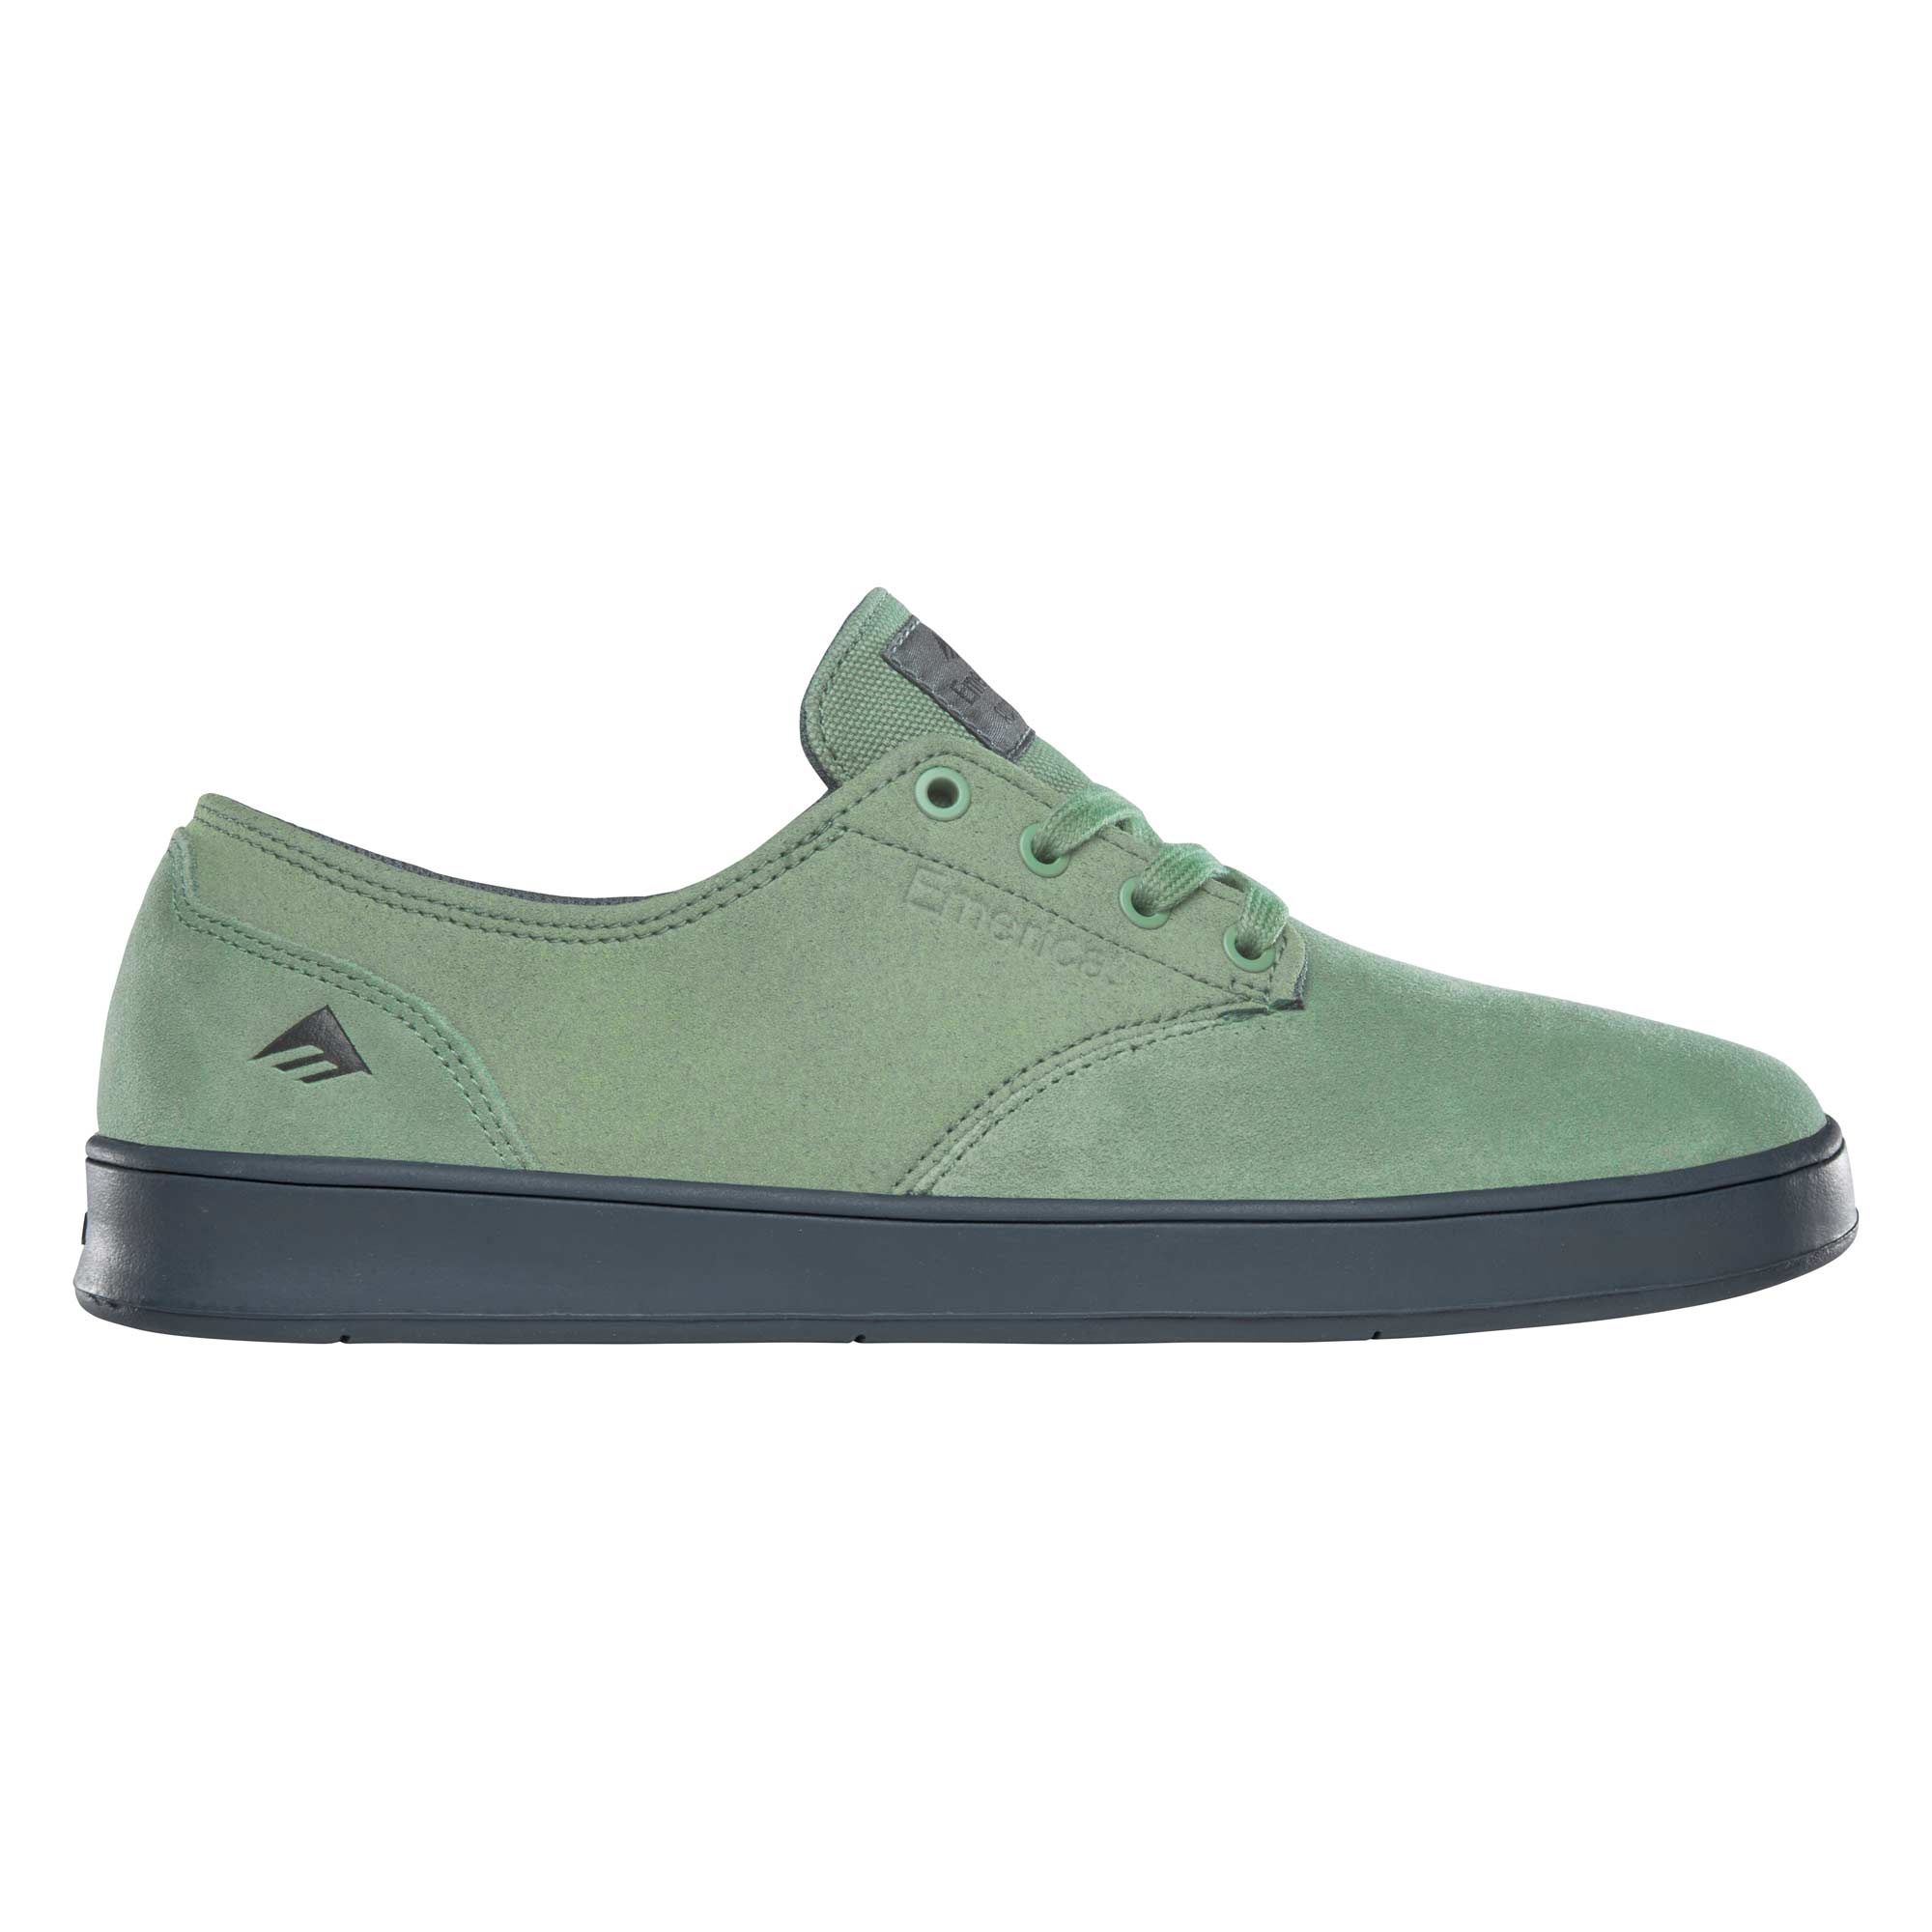 EMERICA Youths Shoe ROMERO LACED green, green